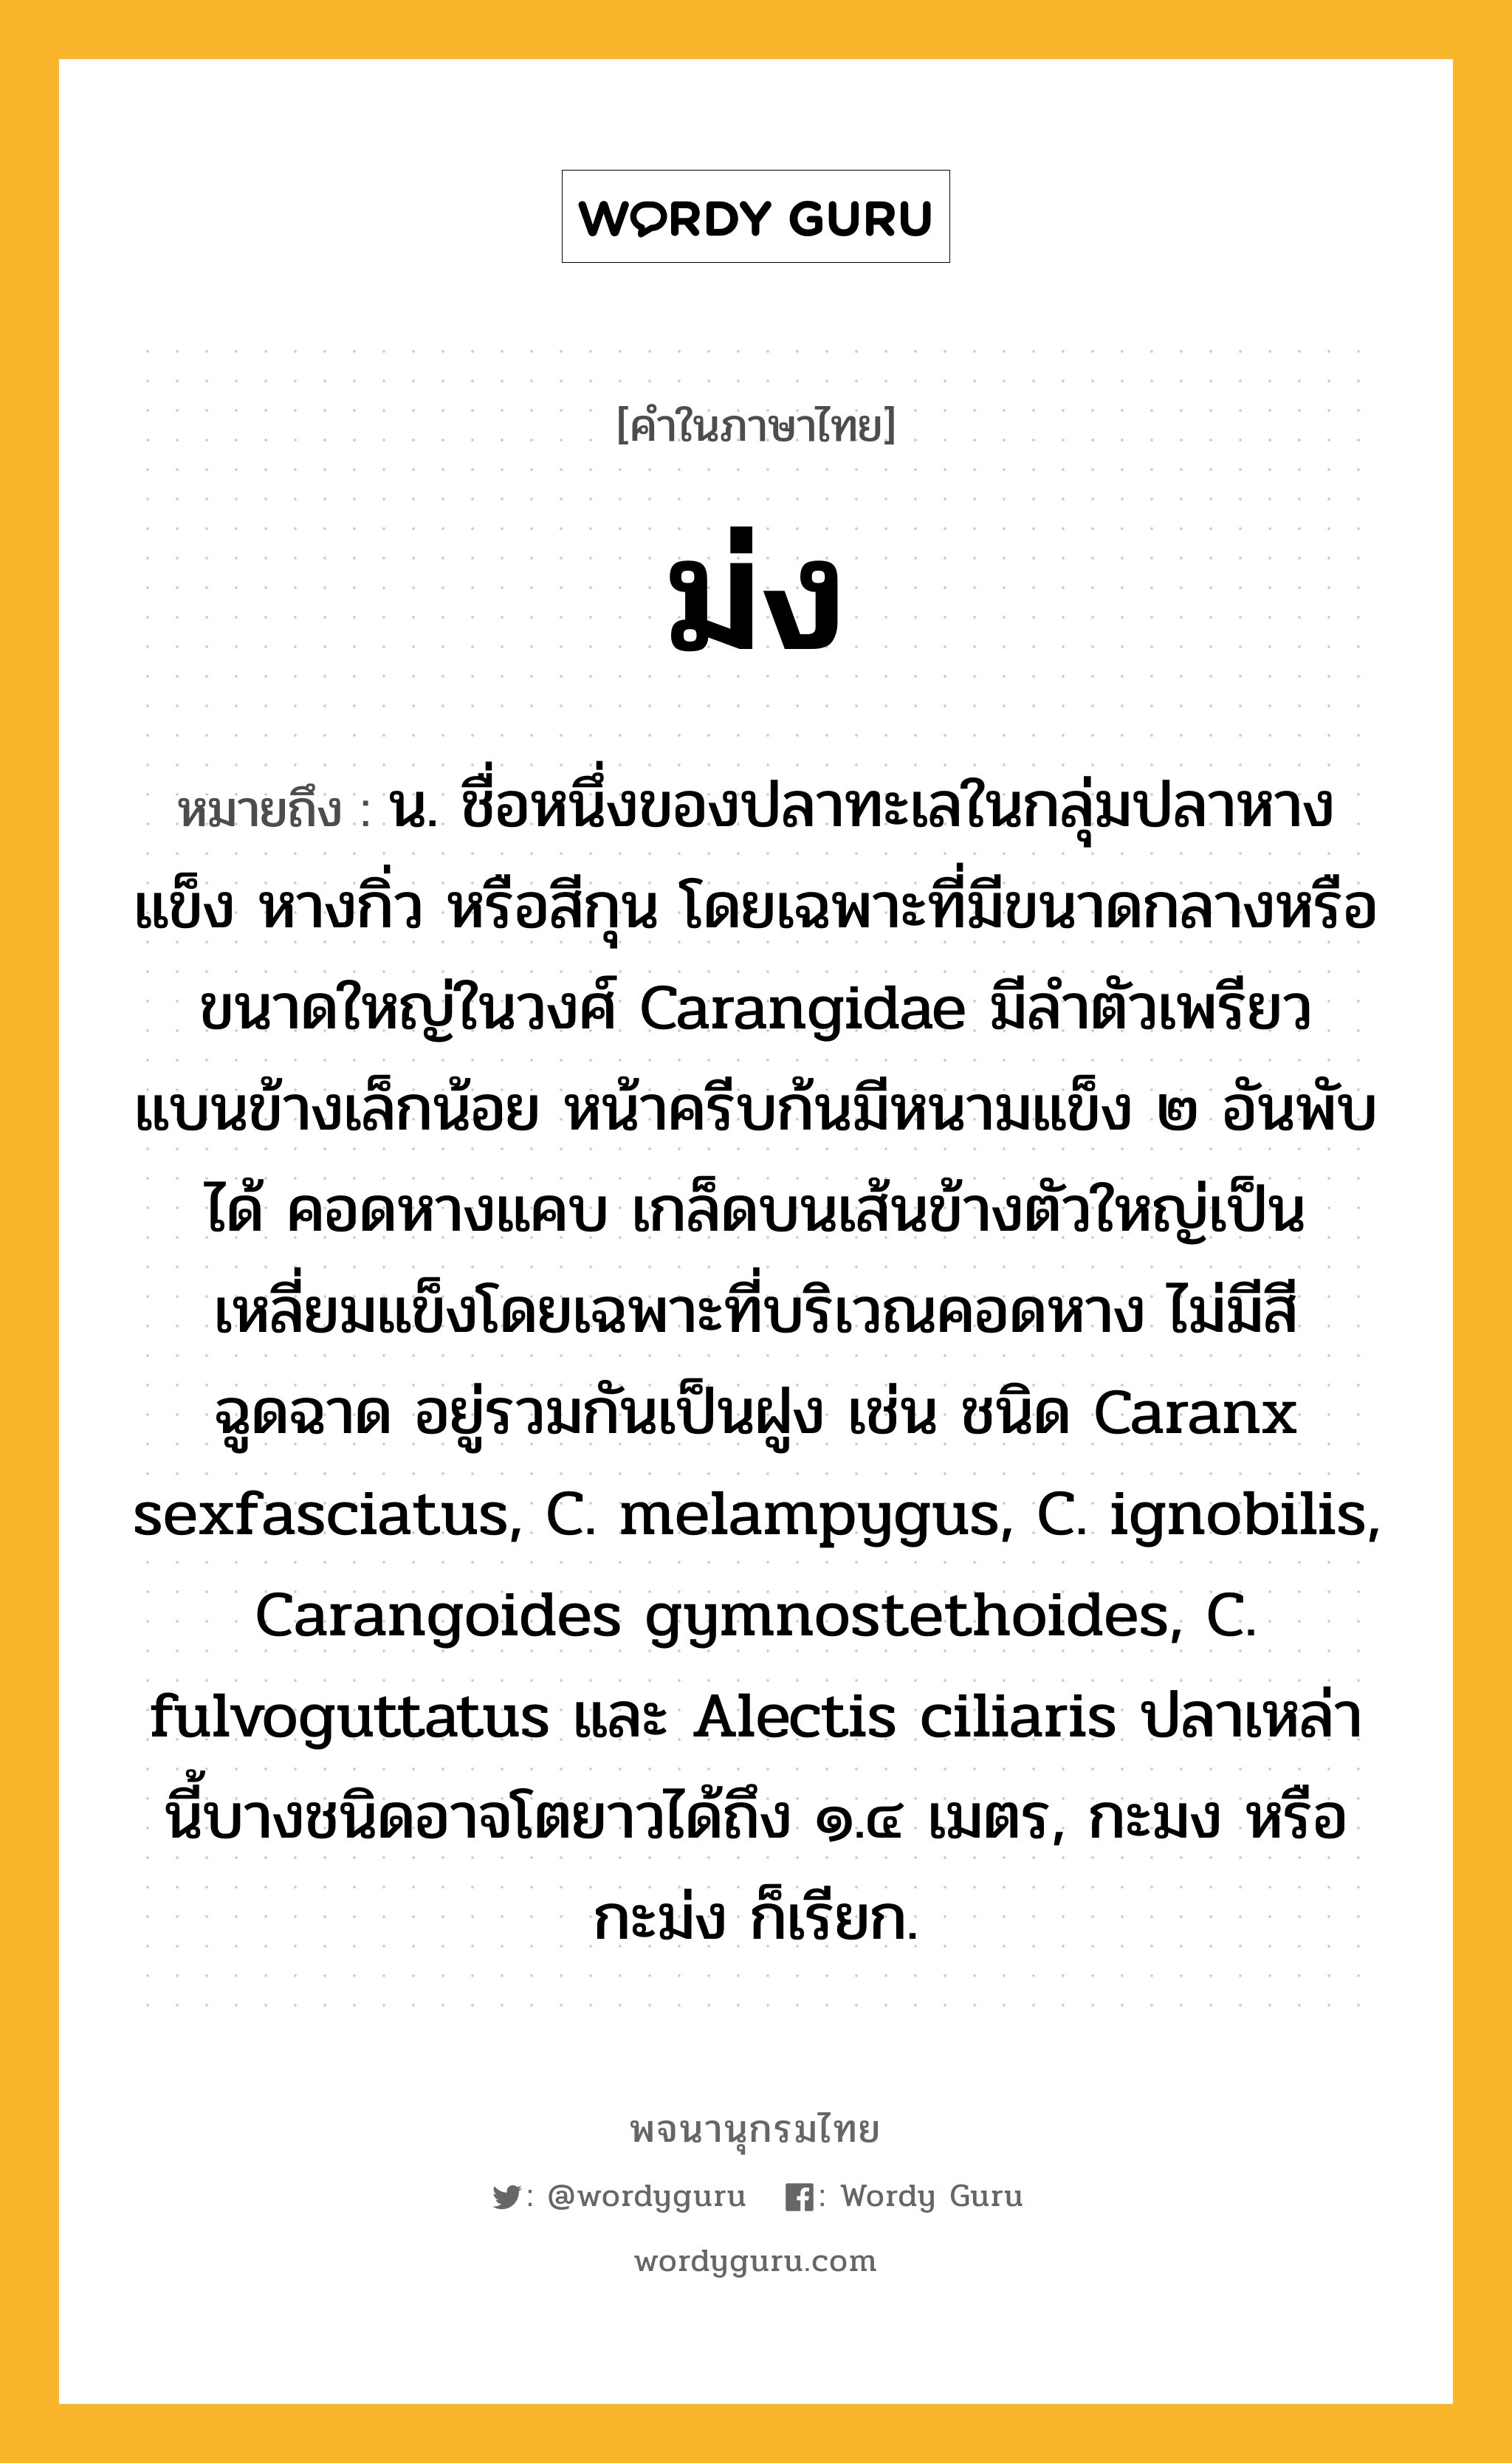 ม่ง ความหมาย หมายถึงอะไร?, คำในภาษาไทย ม่ง หมายถึง น. ชื่อหนึ่งของปลาทะเลในกลุ่มปลาหางแข็ง หางกิ่ว หรือสีกุน โดยเฉพาะที่มีขนาดกลางหรือขนาดใหญ่ในวงศ์ Carangidae มีลําตัวเพรียว แบนข้างเล็กน้อย หน้าครีบก้นมีหนามแข็ง ๒ อันพับได้ คอดหางแคบ เกล็ดบนเส้นข้างตัวใหญ่เป็นเหลี่ยมแข็งโดยเฉพาะที่บริเวณคอดหาง ไม่มีสีฉูดฉาด อยู่รวมกันเป็นฝูง เช่น ชนิด Caranx sexfasciatus, C. melampygus, C. ignobilis, Carangoides gymnostethoides, C. fulvoguttatus และ Alectis ciliaris ปลาเหล่านี้บางชนิดอาจโตยาวได้ถึง ๑.๔ เมตร, กะมง หรือ กะม่ง ก็เรียก.